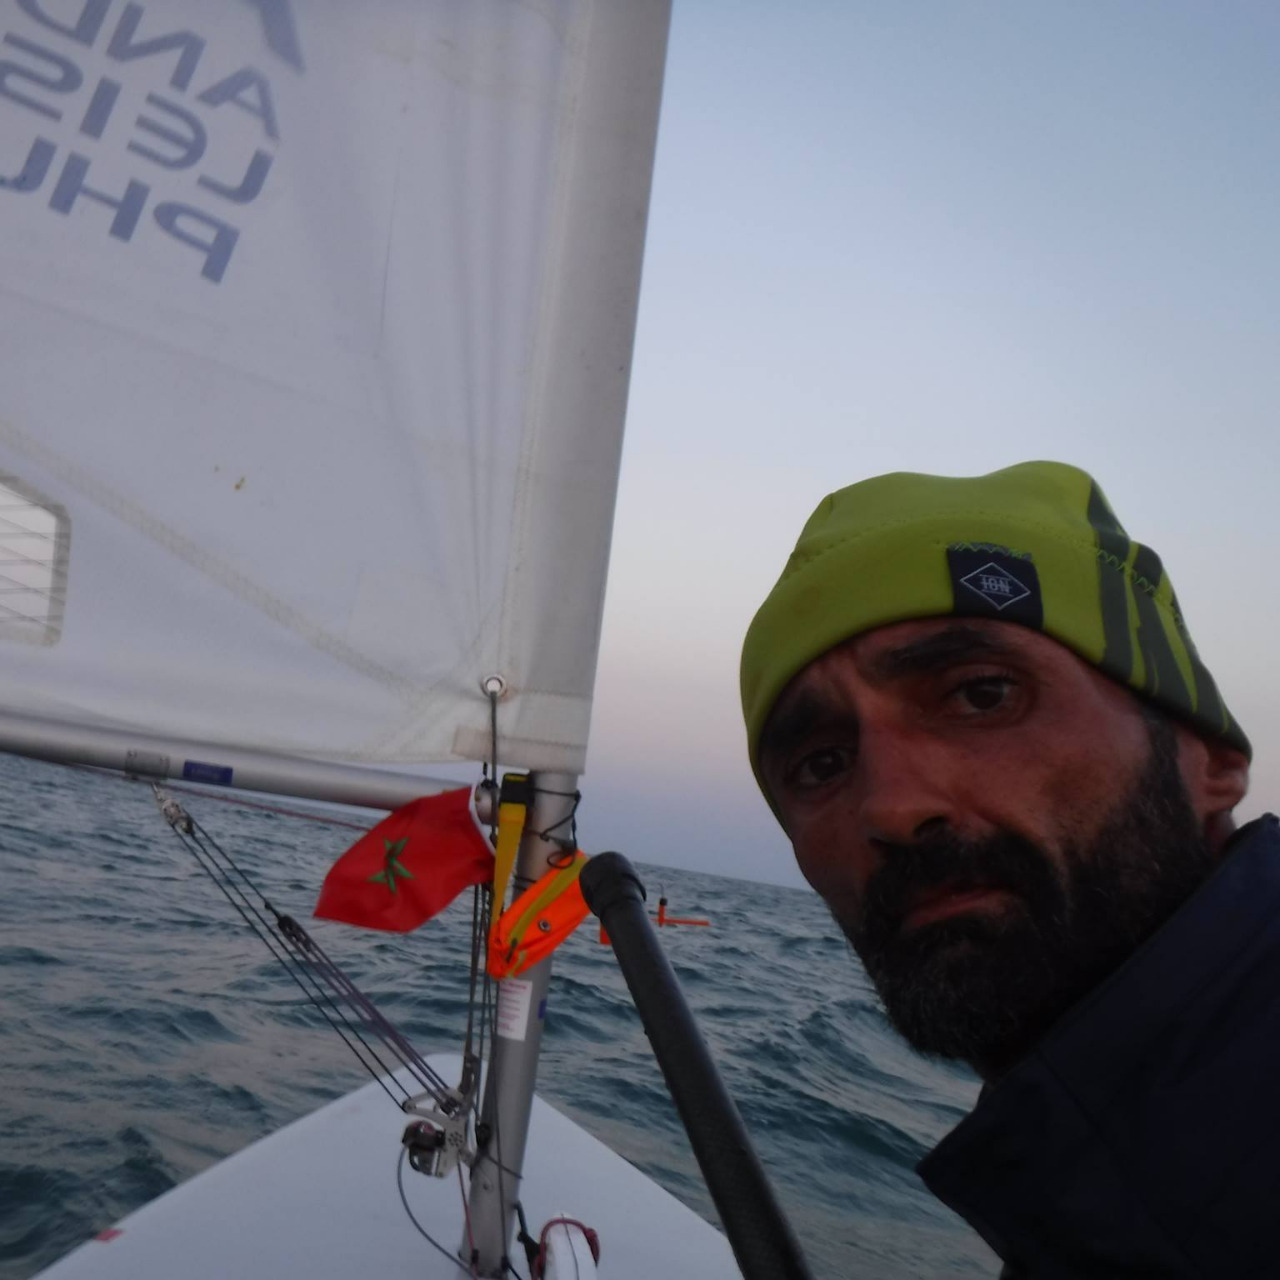 Voile / Asilah : Le vent a battu Yassine Derkaoui l’empêchant à établir un nouveau record du monde